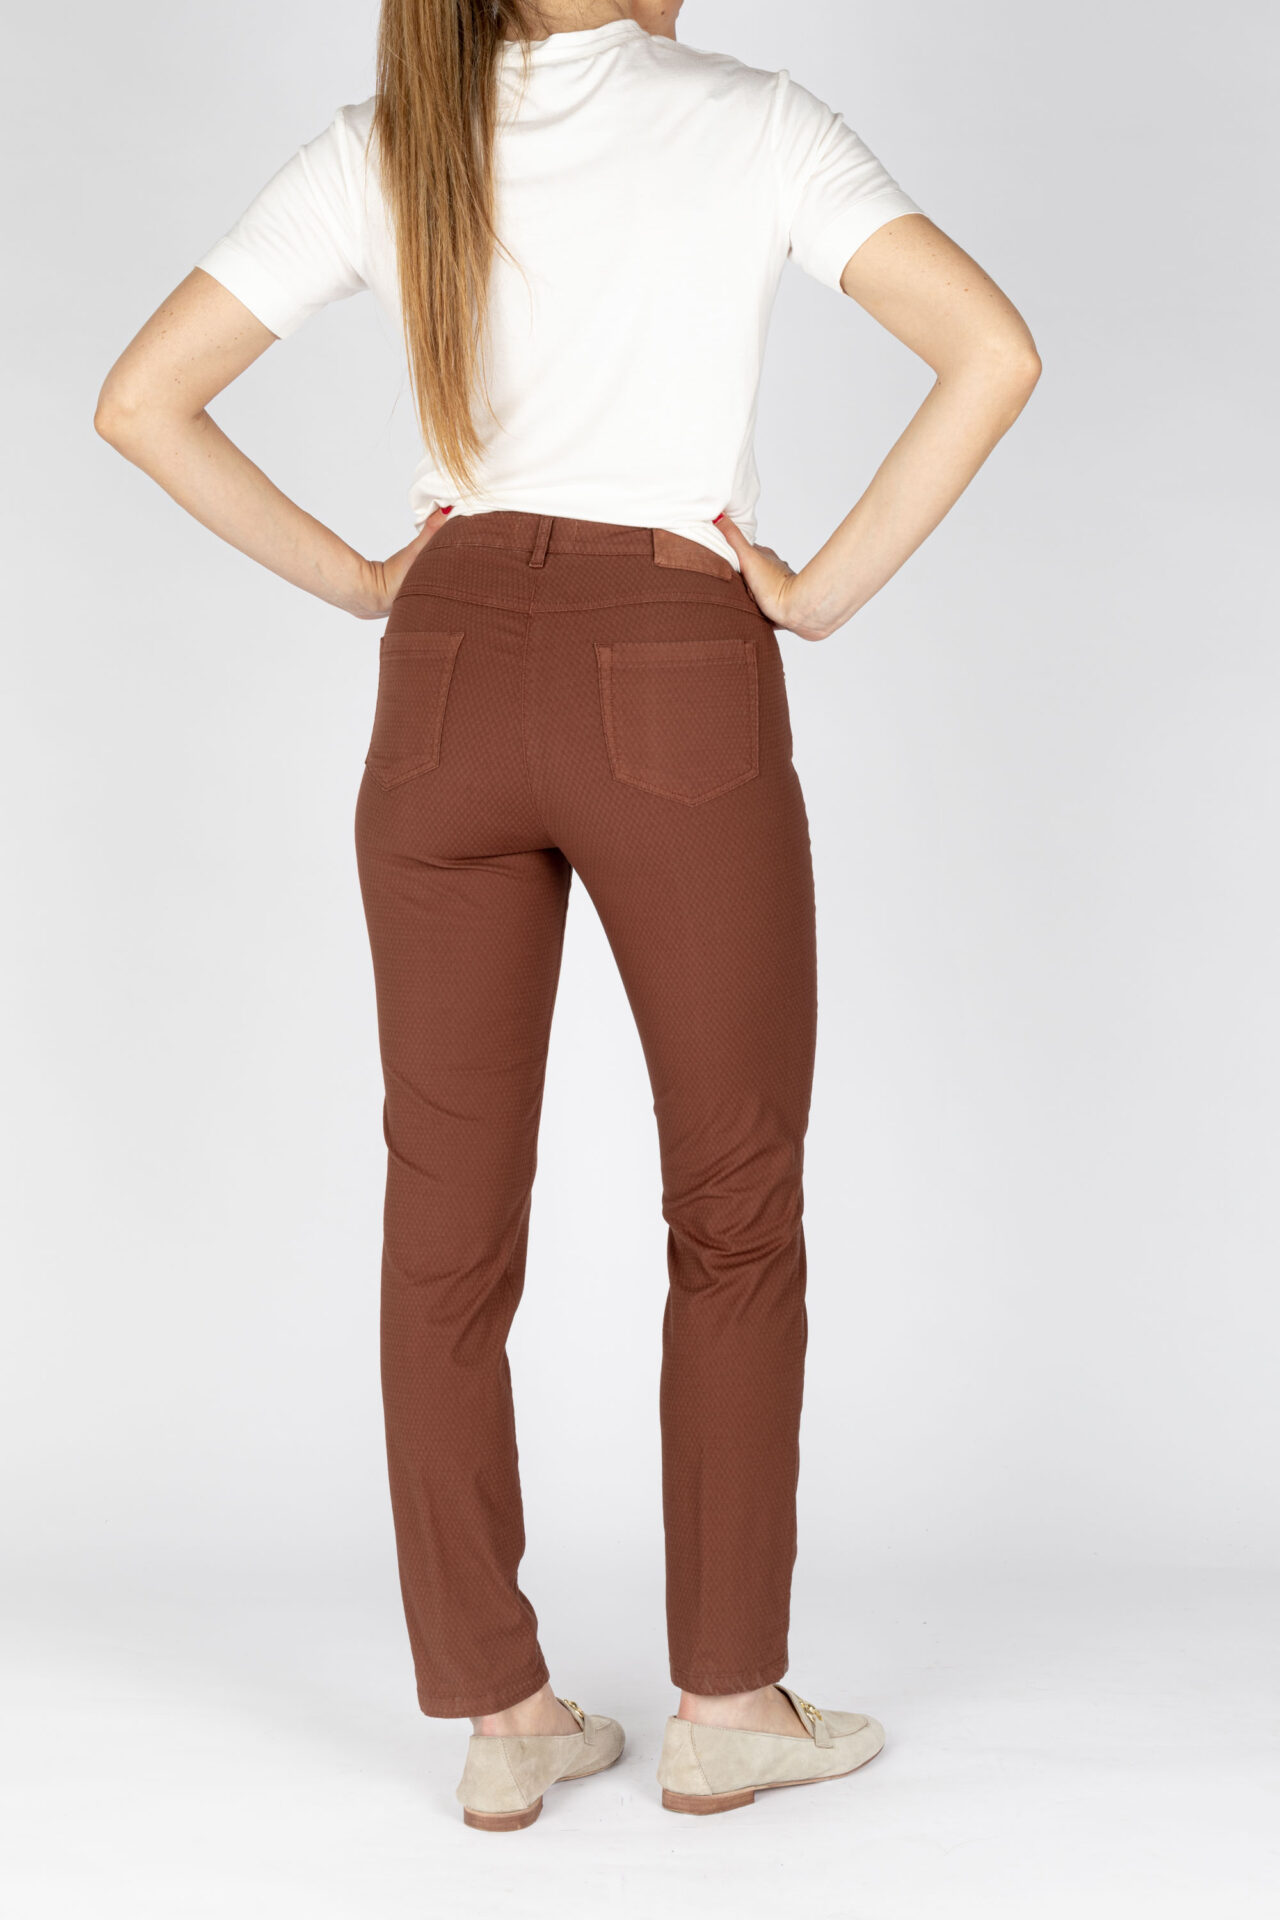 Pantaloni linea jeans colore biscotto tessuto cotone armaturato